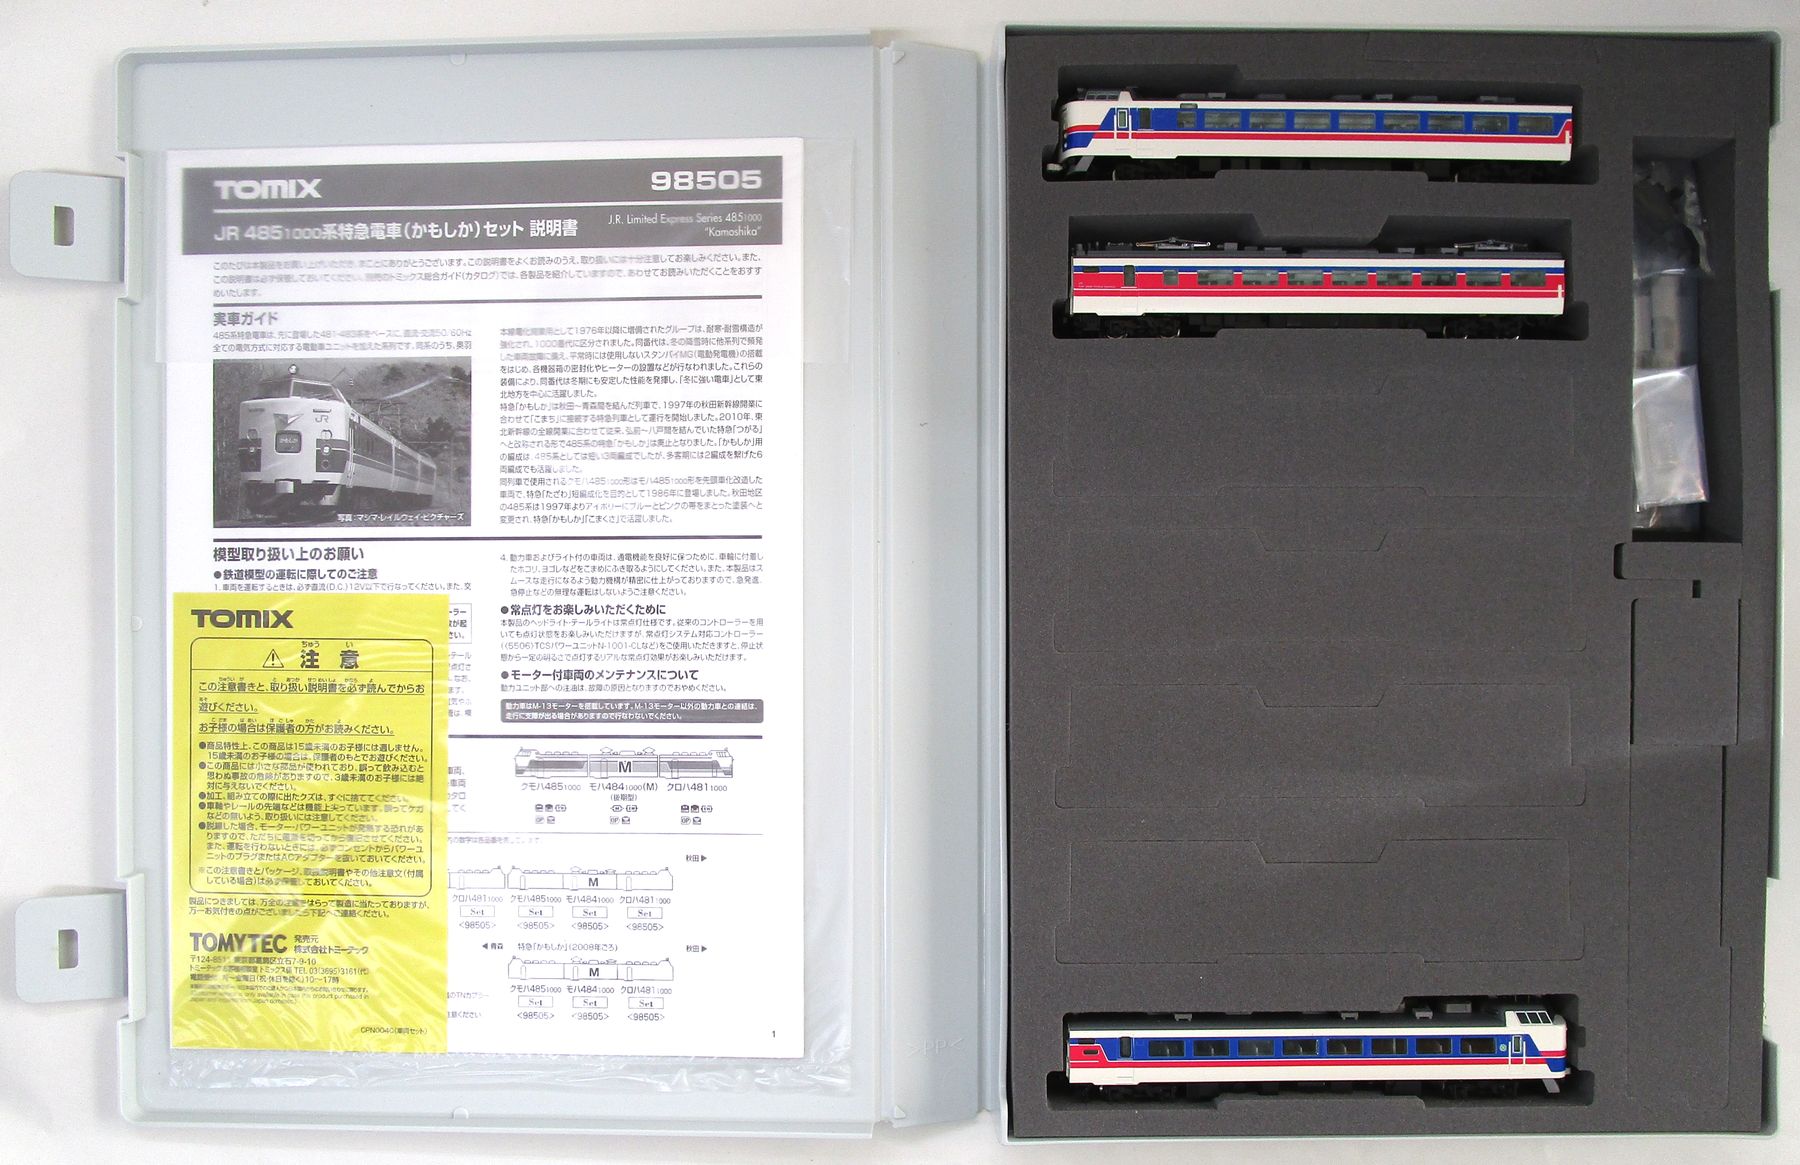 公式]鉄道模型(98505JR 485-1000系特急電車(かもしか) 3両セット)商品